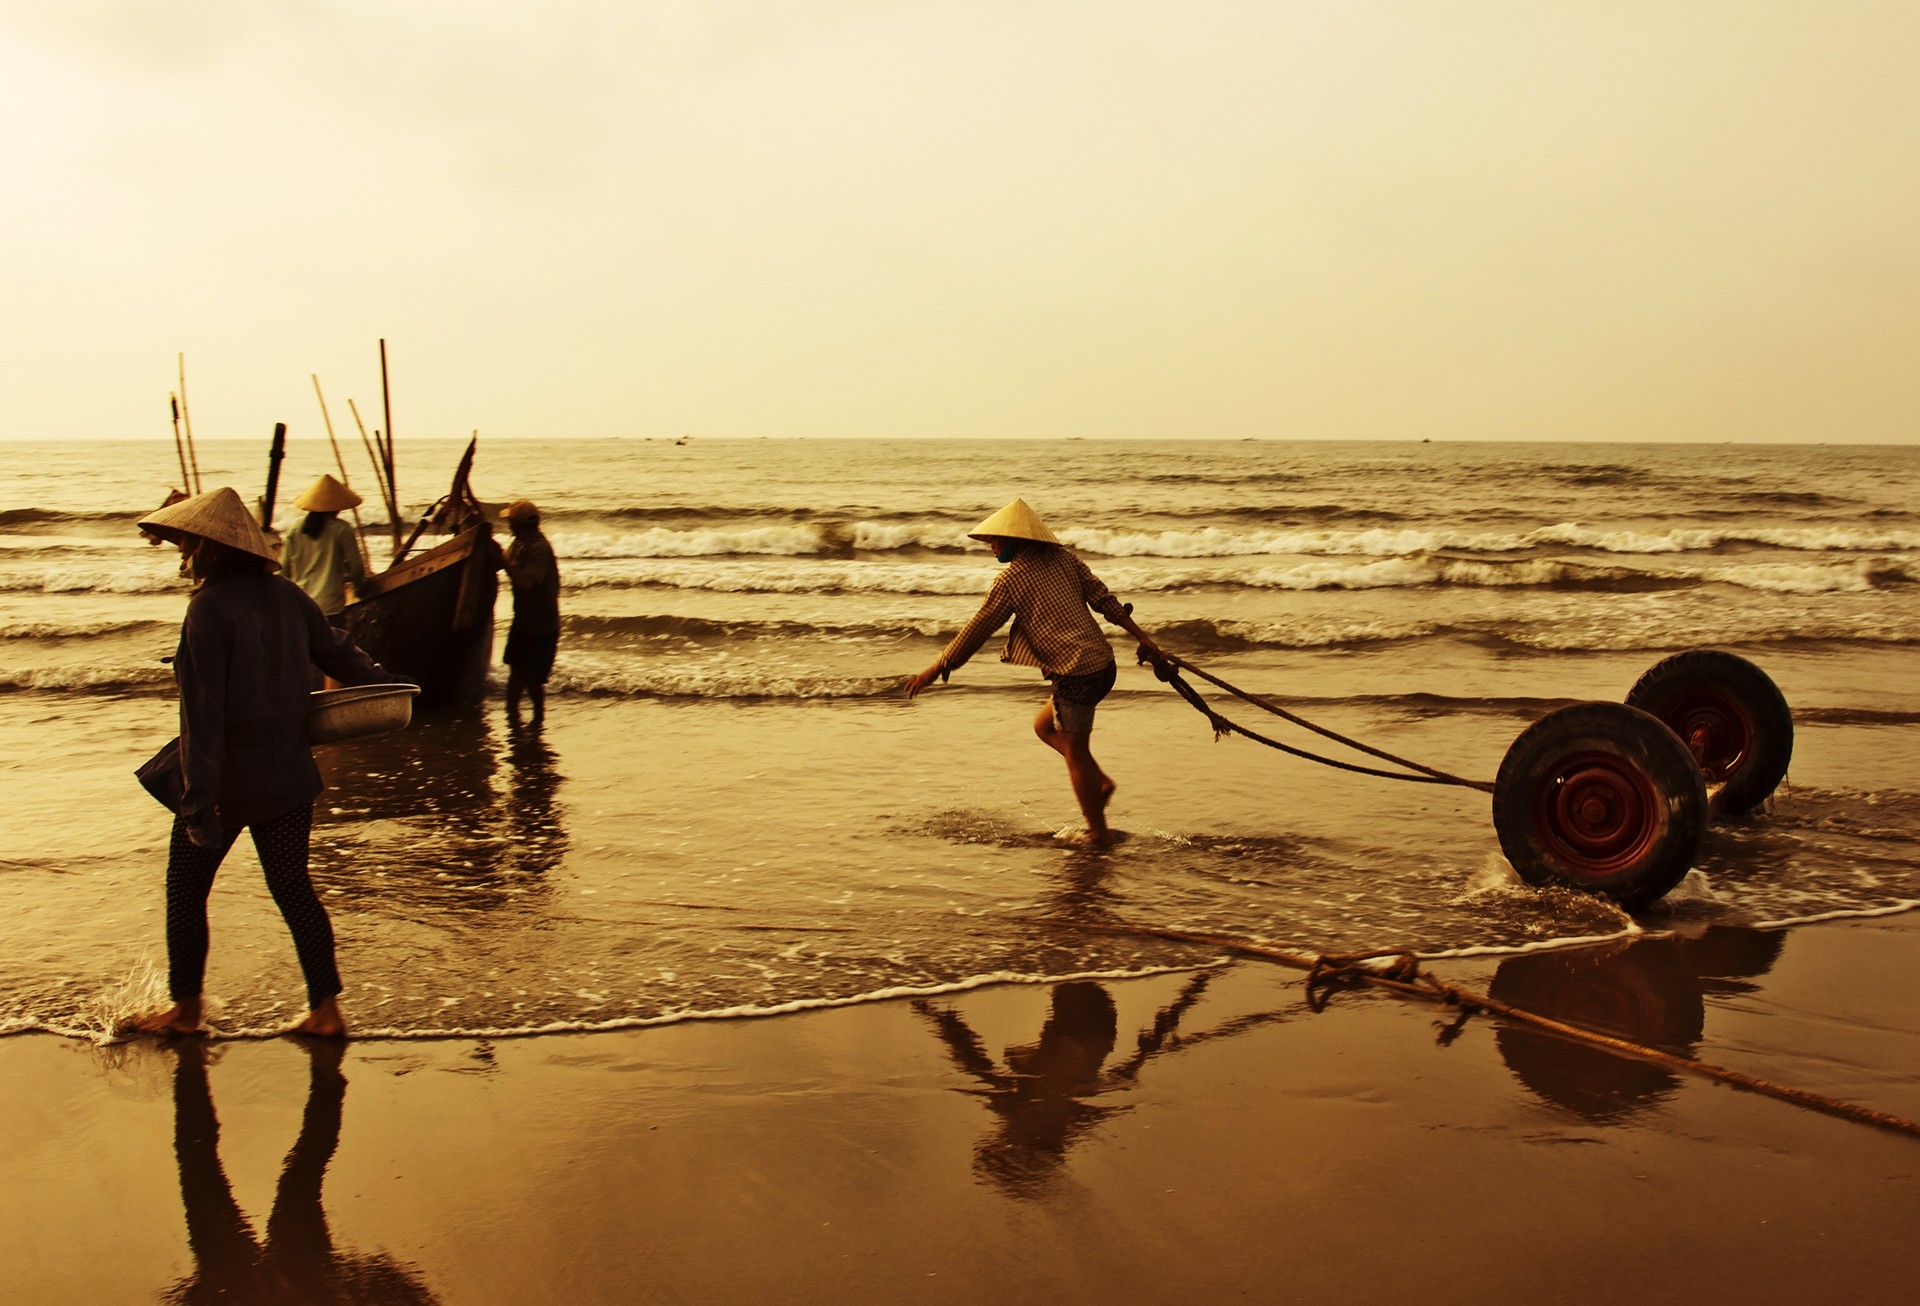 sầm sơn beach thanh hóa việt nam free photo